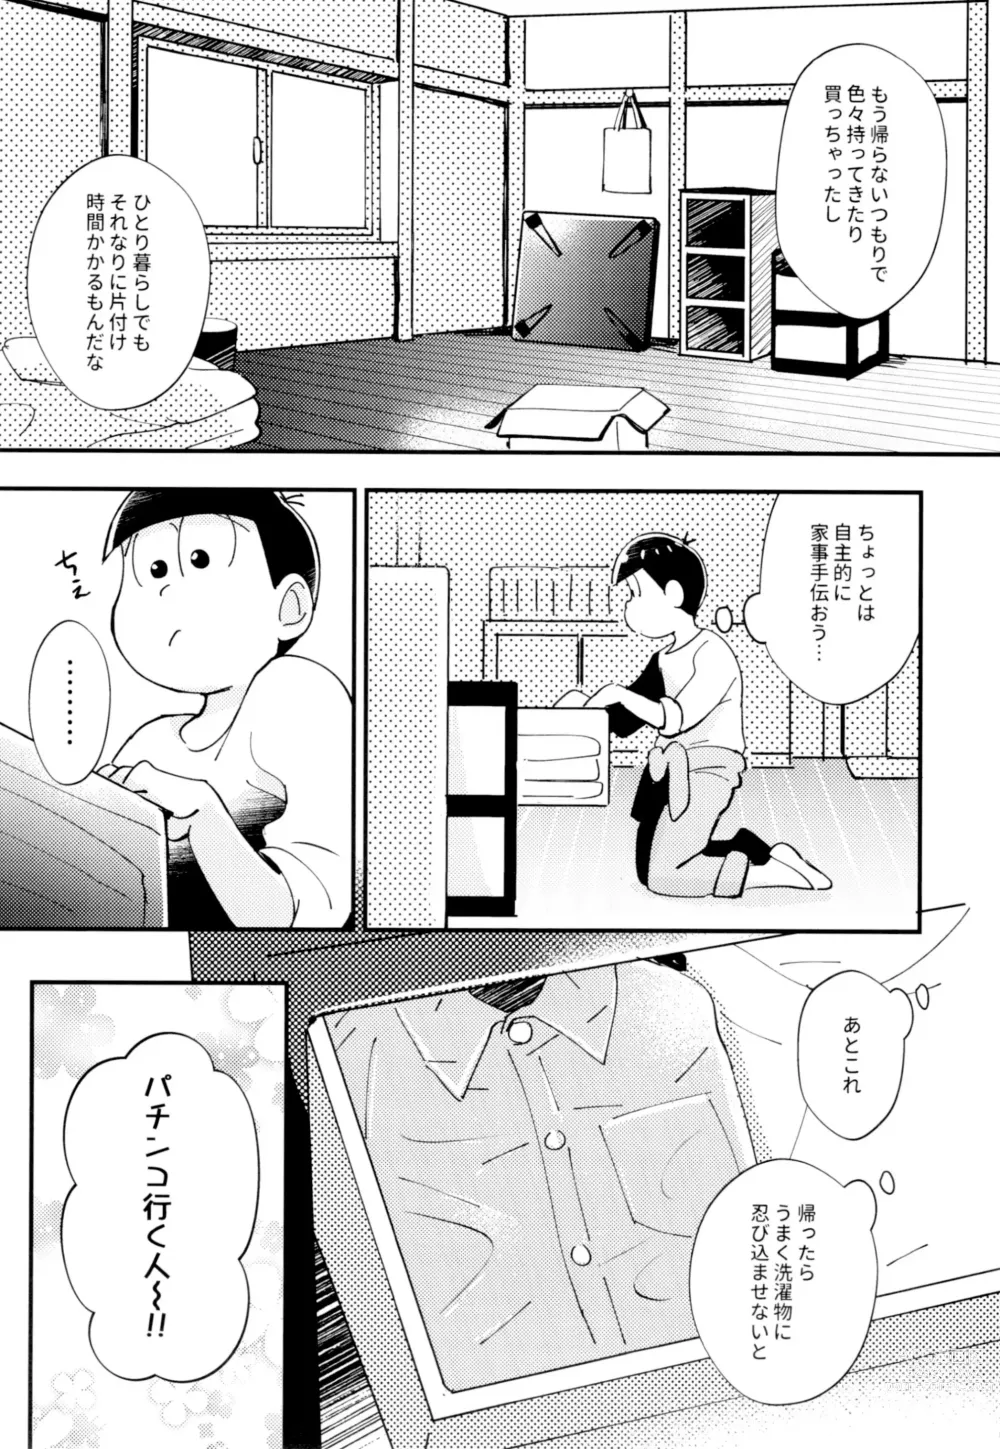 Page 5 of doujinshi 2-haku 3-kka, Kimi to Sakurasaku Apart de